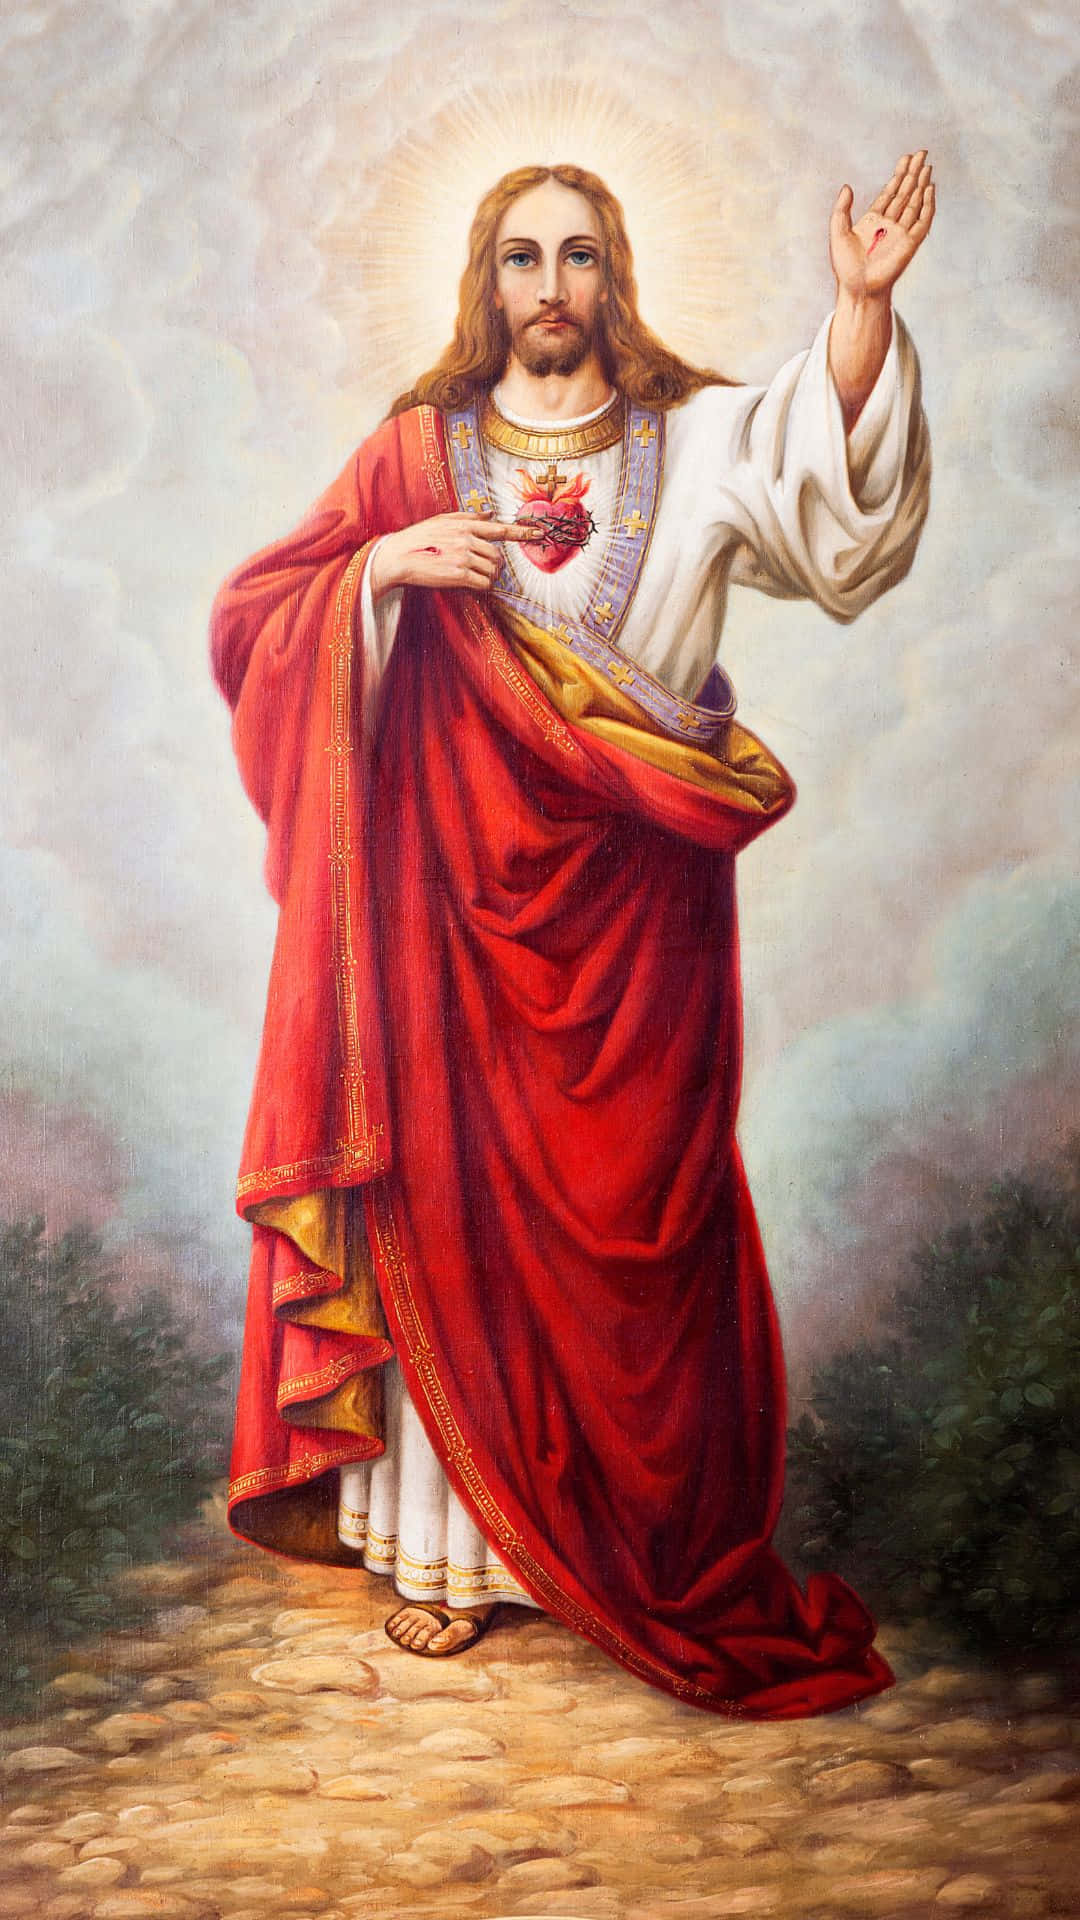 Porträtvon Dem Barmherzigen Jesus Im Himmel Wallpaper